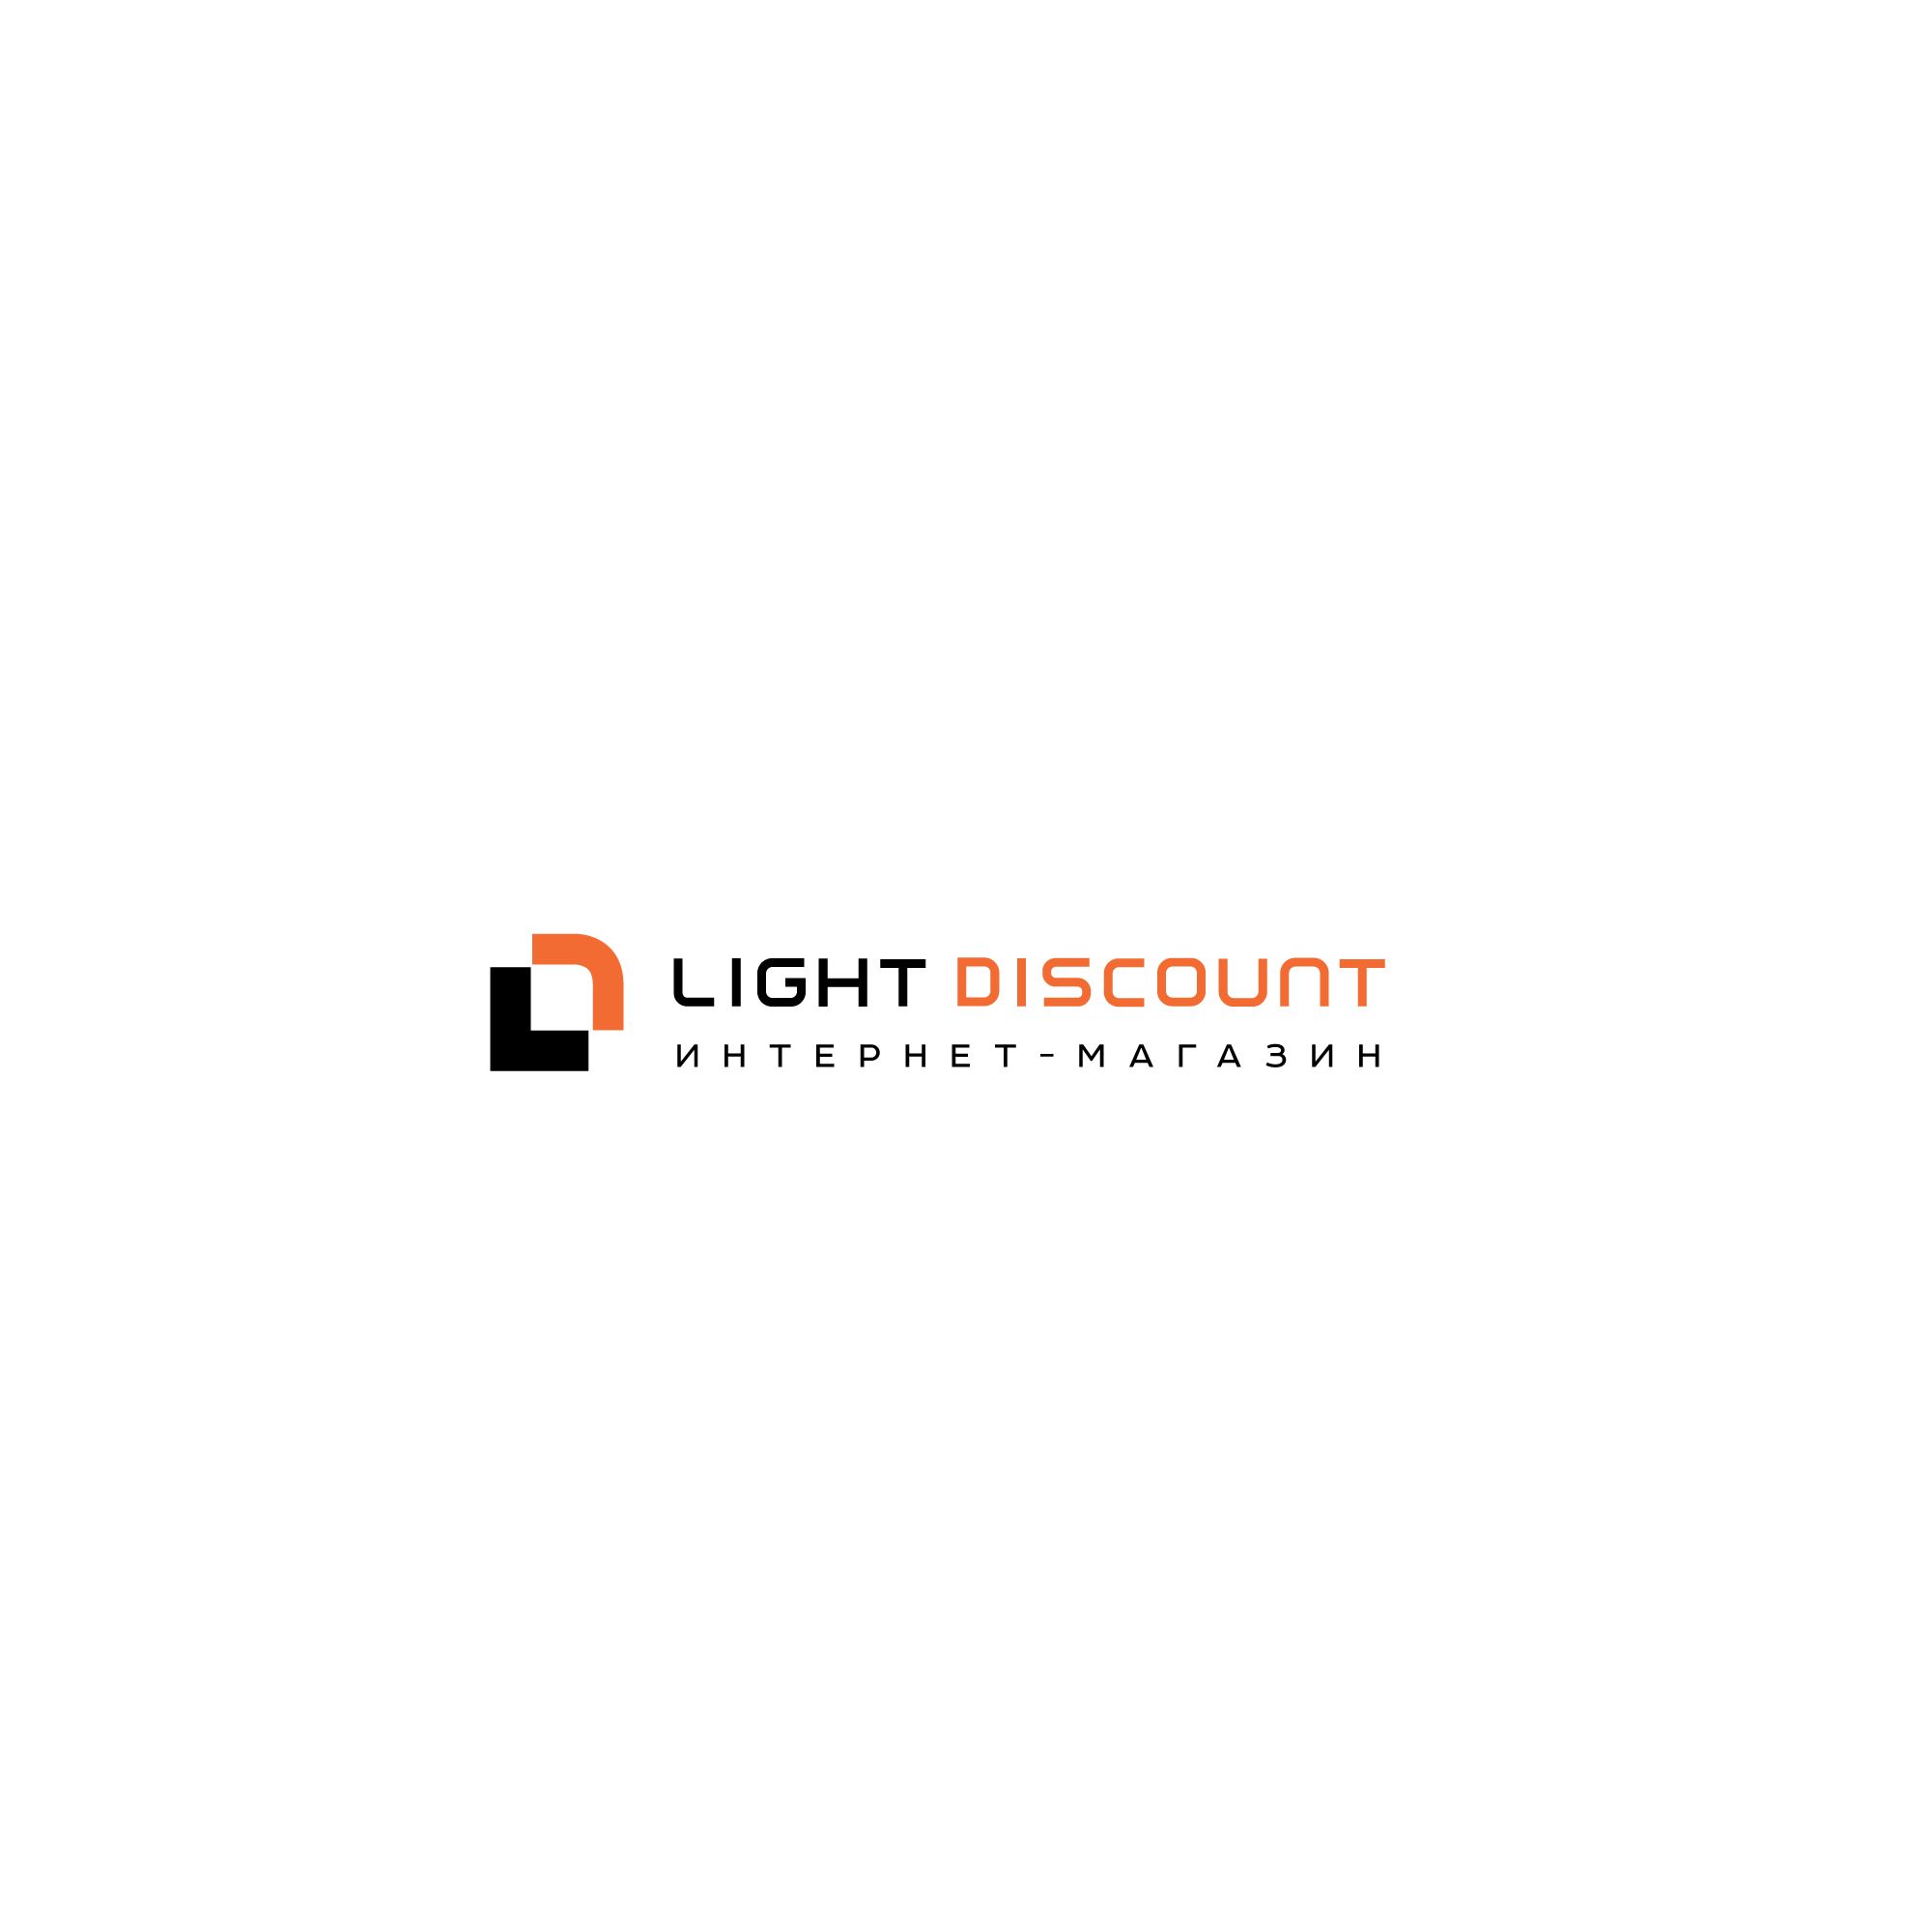 Логотип для light discount - дизайнер SmolinDenis